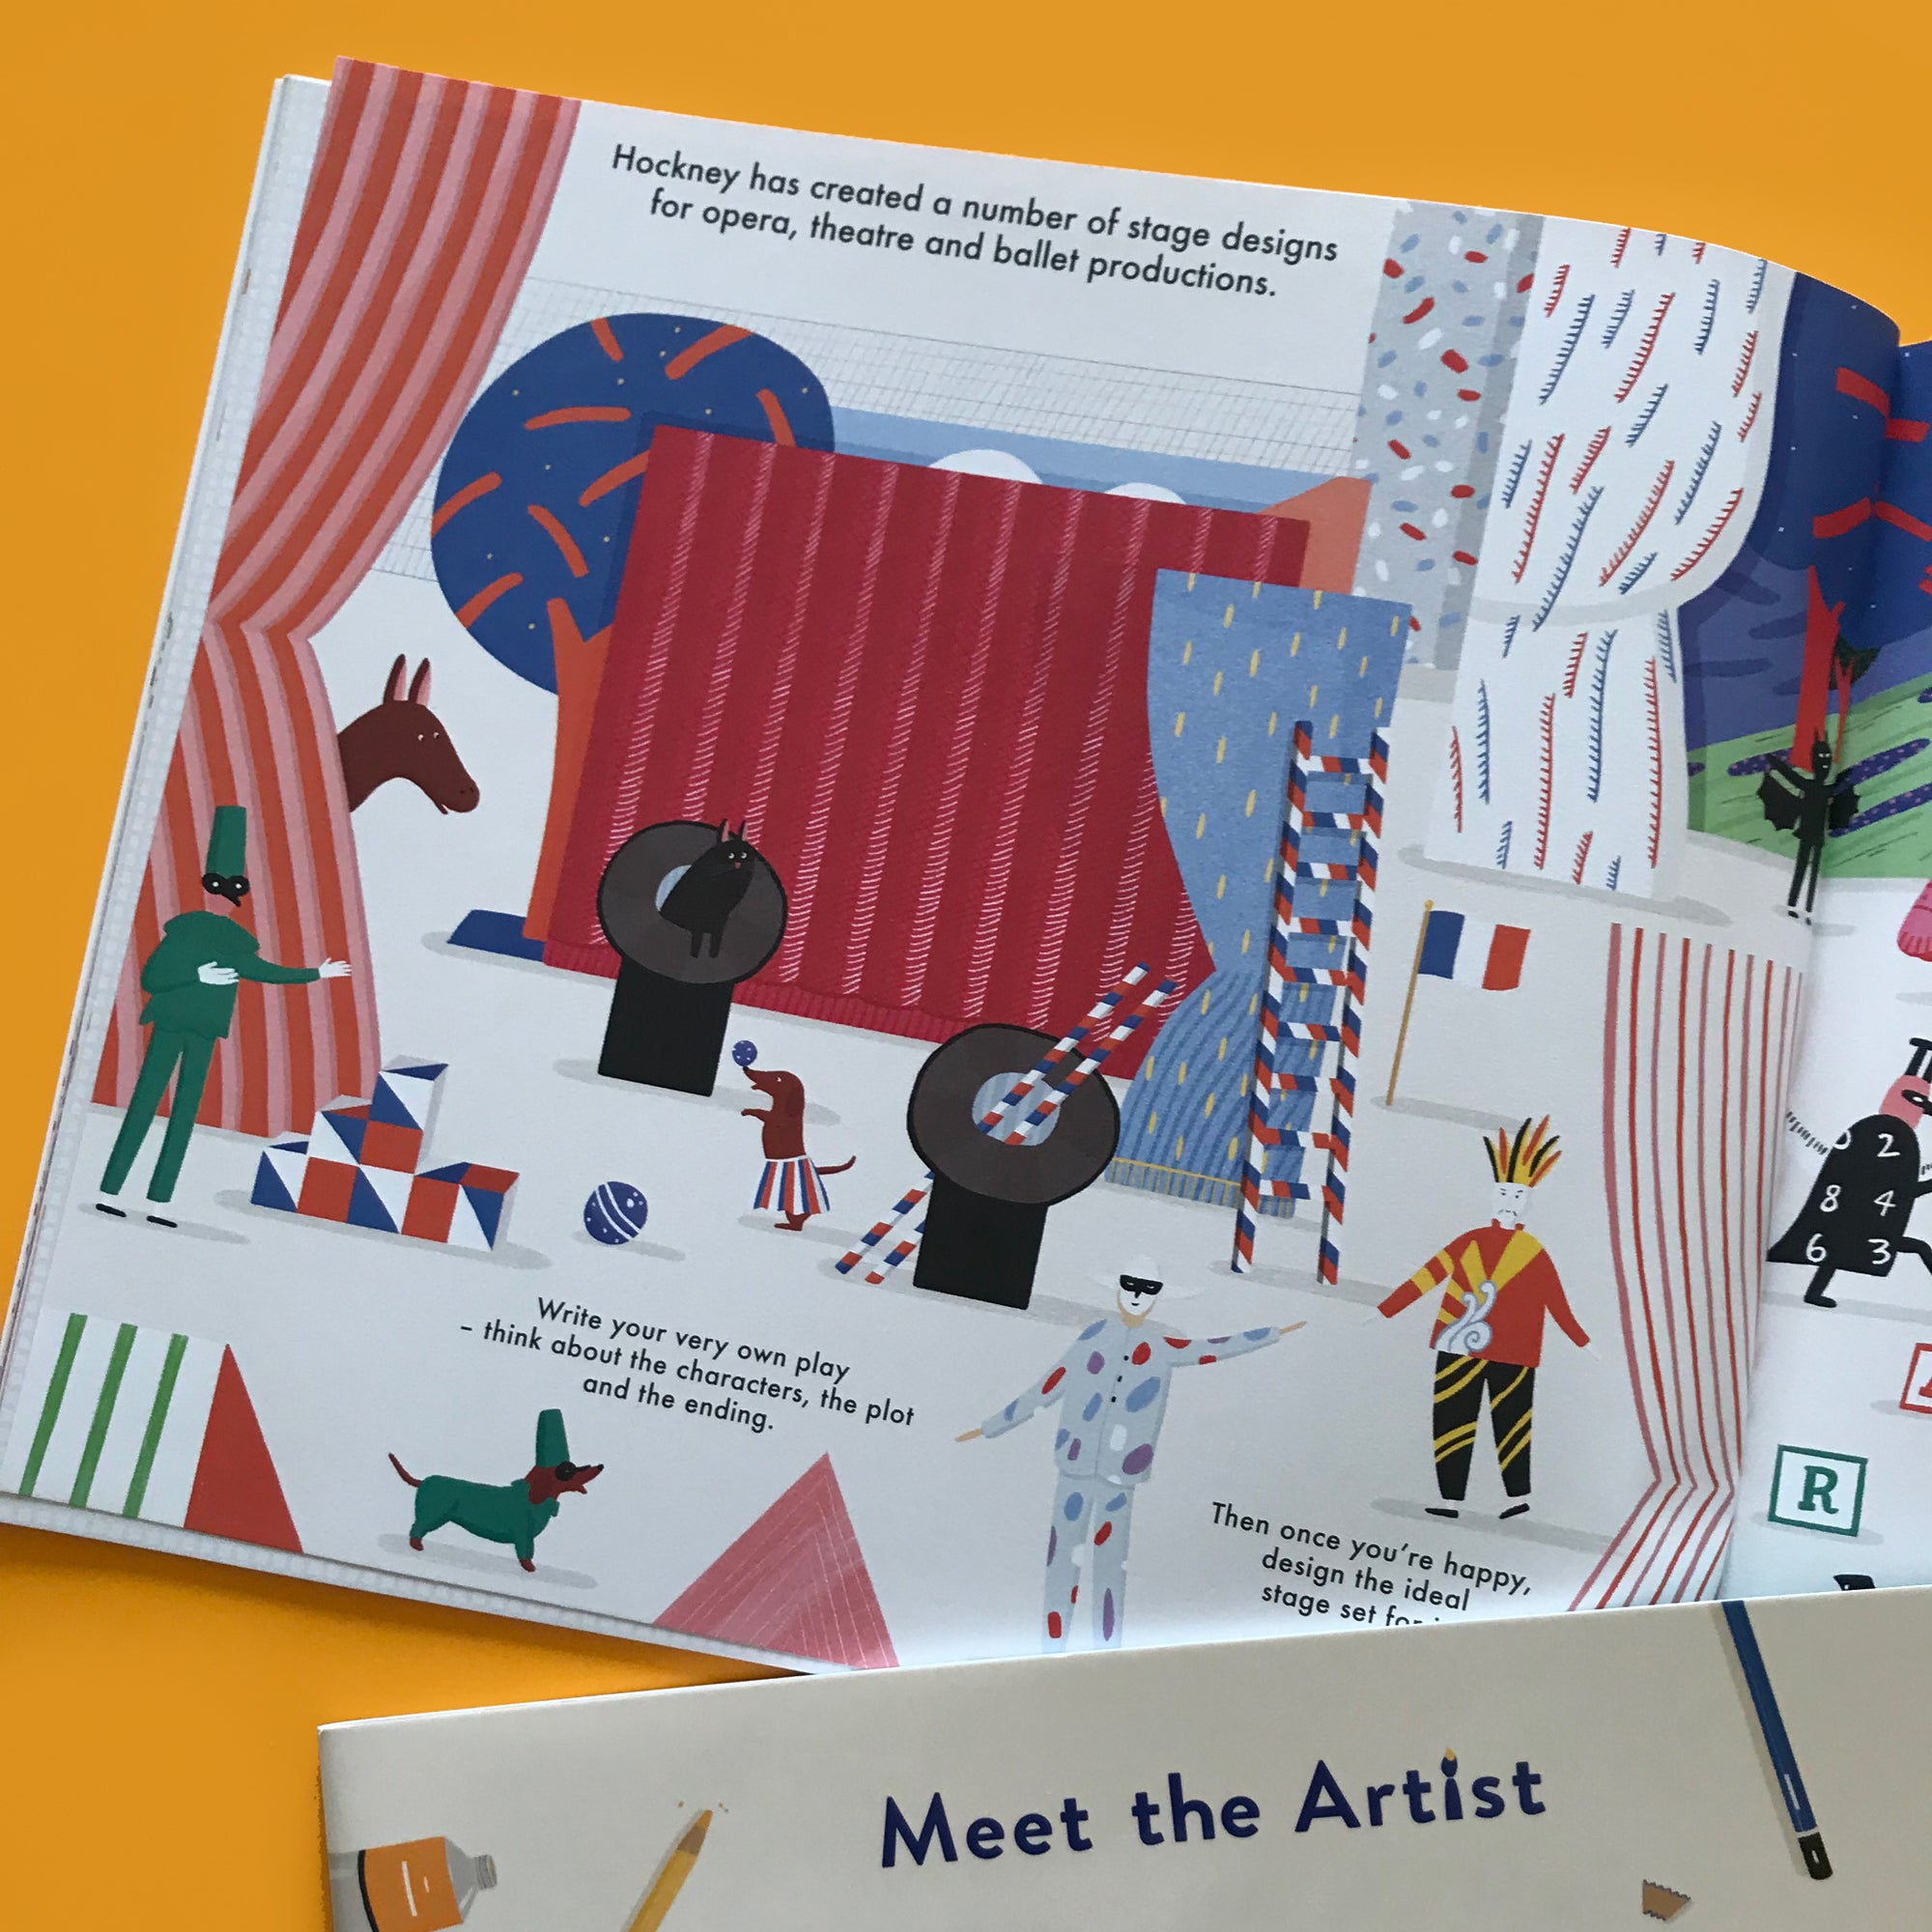 Meet the Artist: David Hockney activity book